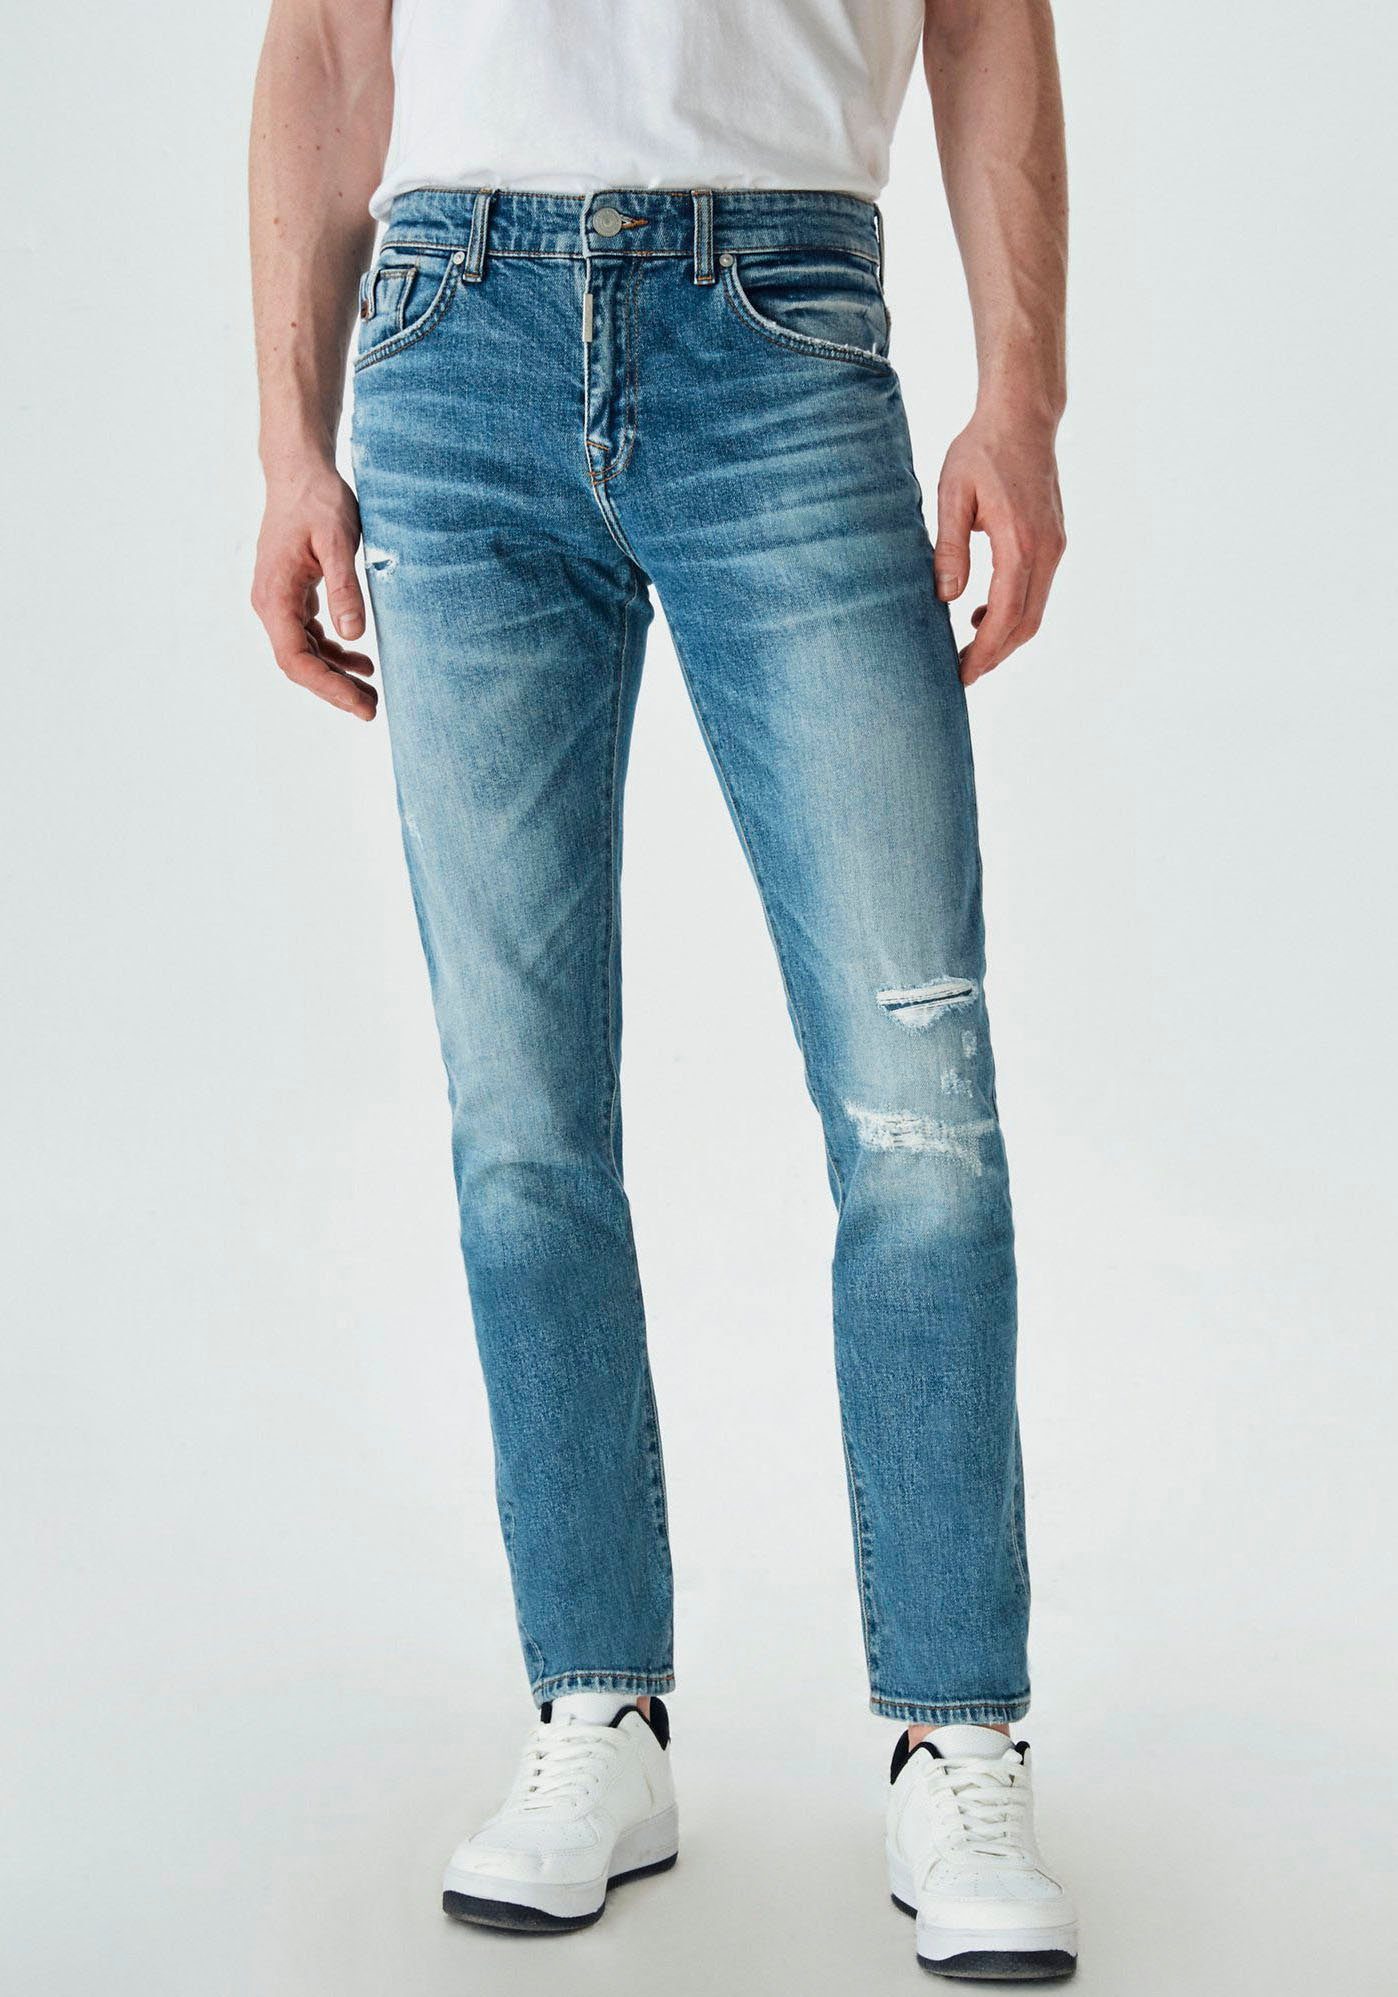 dun Bestuiver Boomgaard LTB Slim-fit-Jeans JOSHUA online kaufen | OTTO